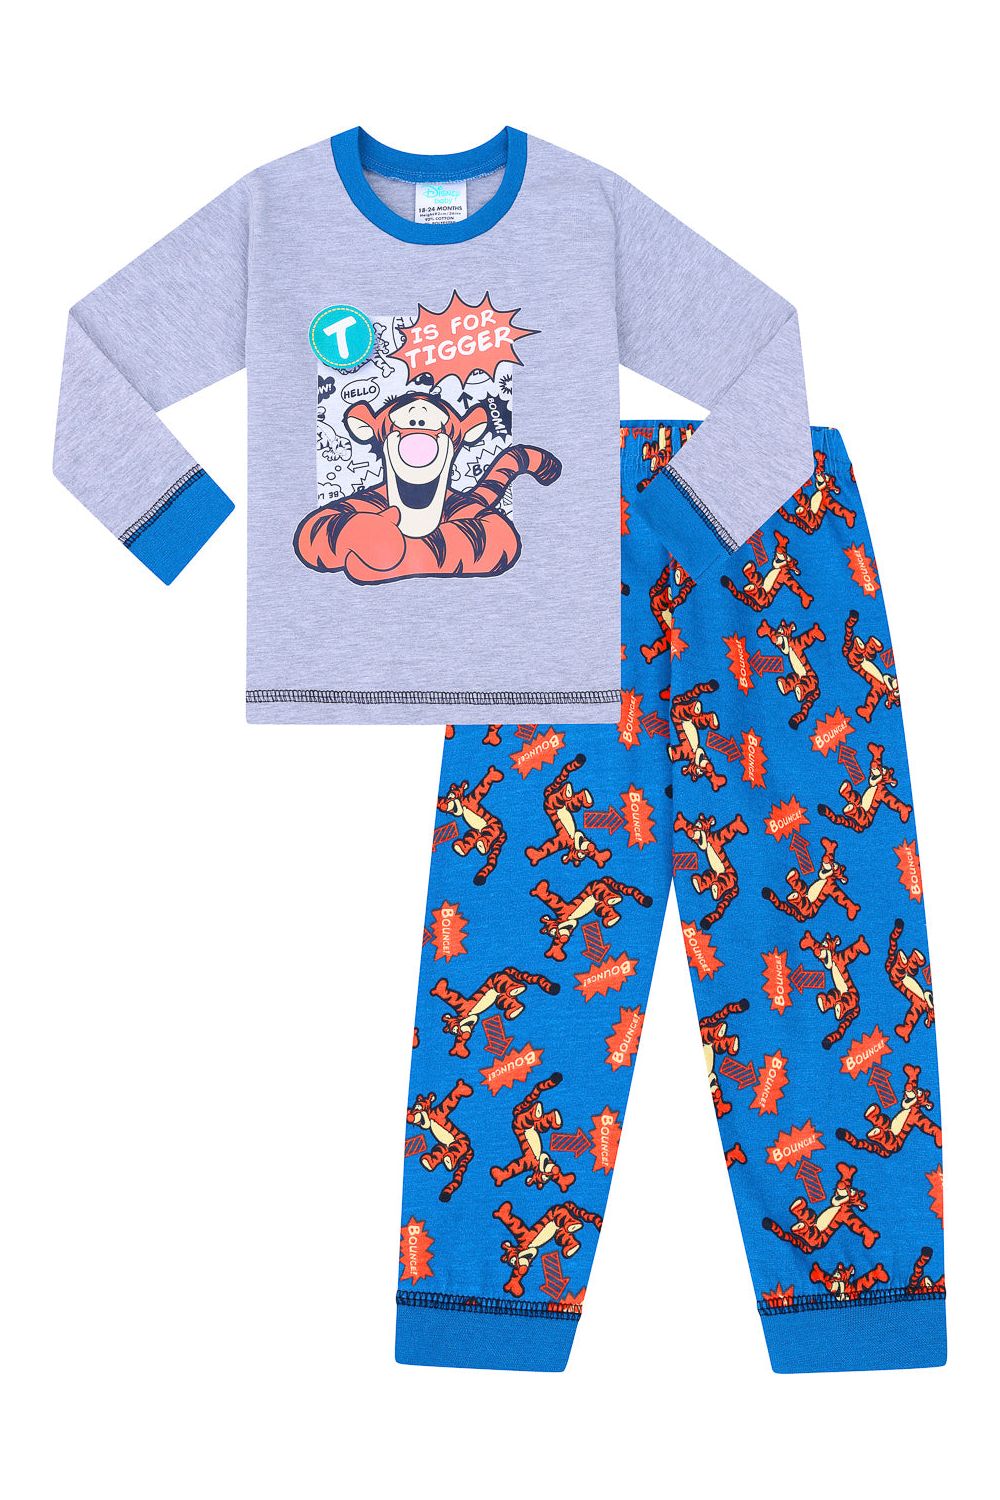 Boys Tigger Baby Snugglefit Pyjamas - Pyjamas.com